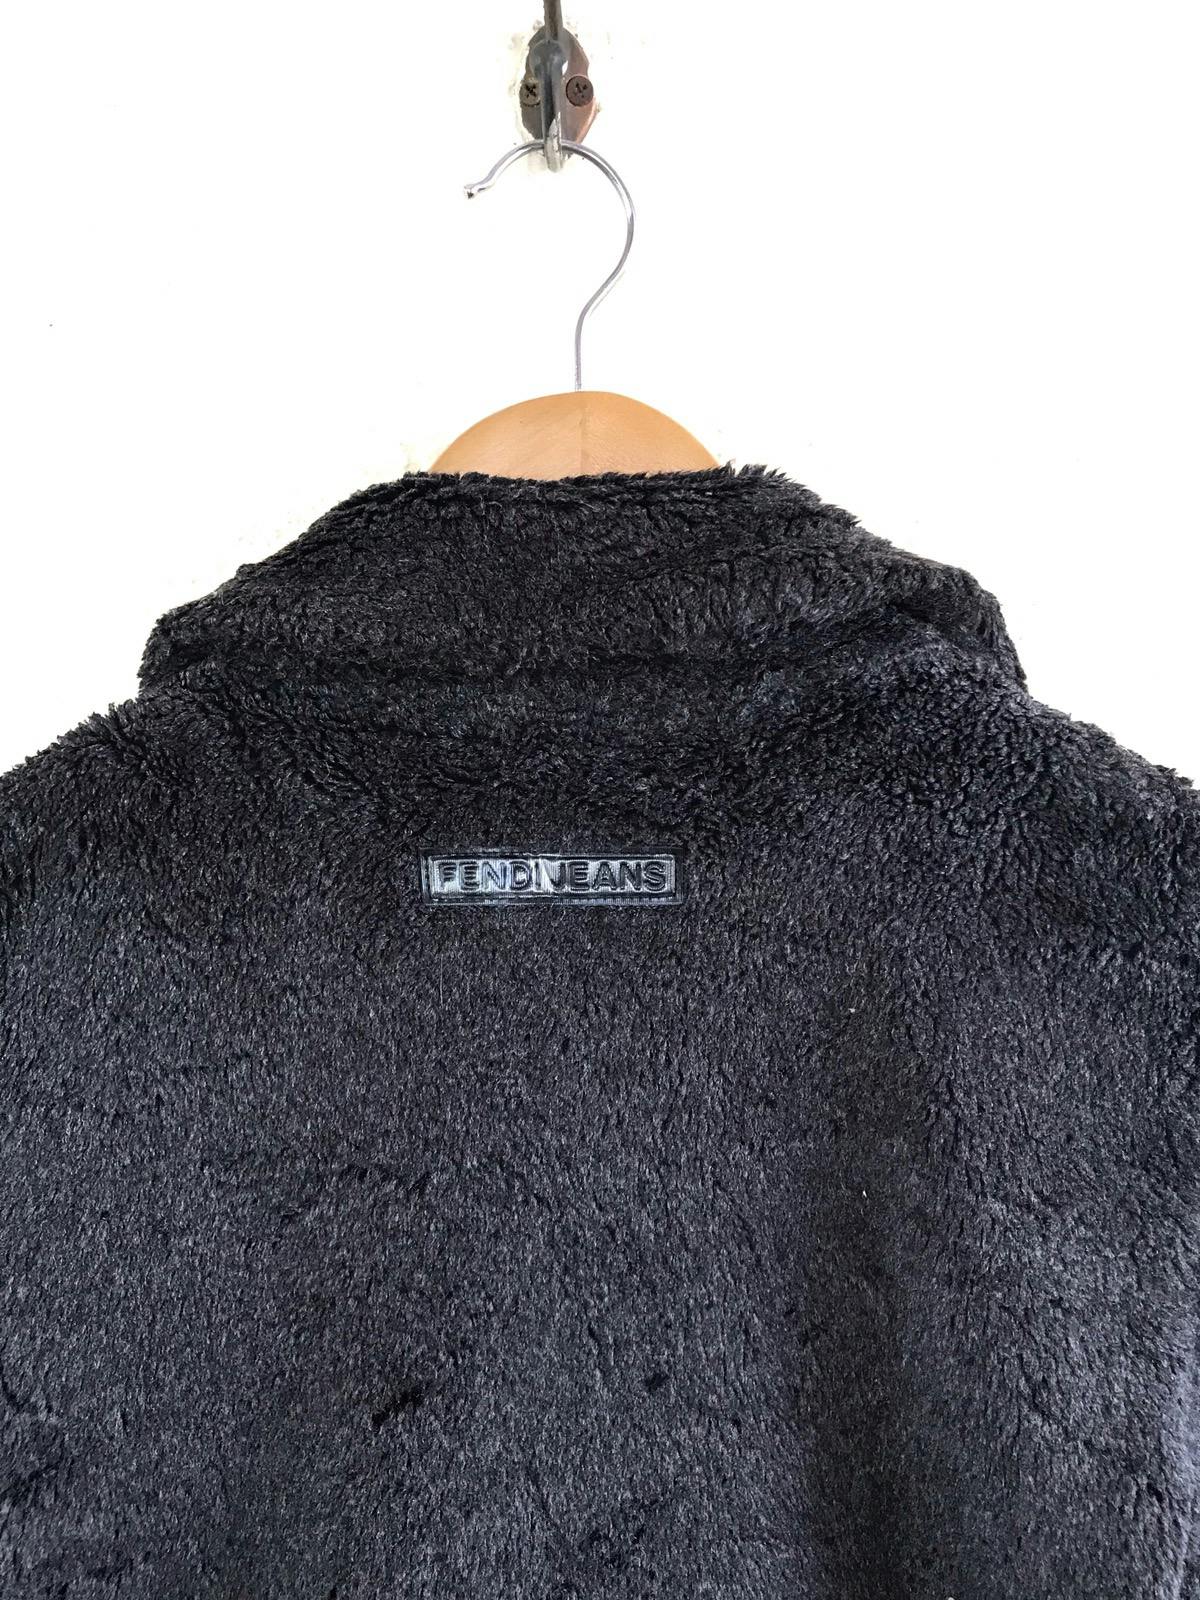 FENDI Jeans Boa Coat/ Fur Jacket Made in Italy - 9